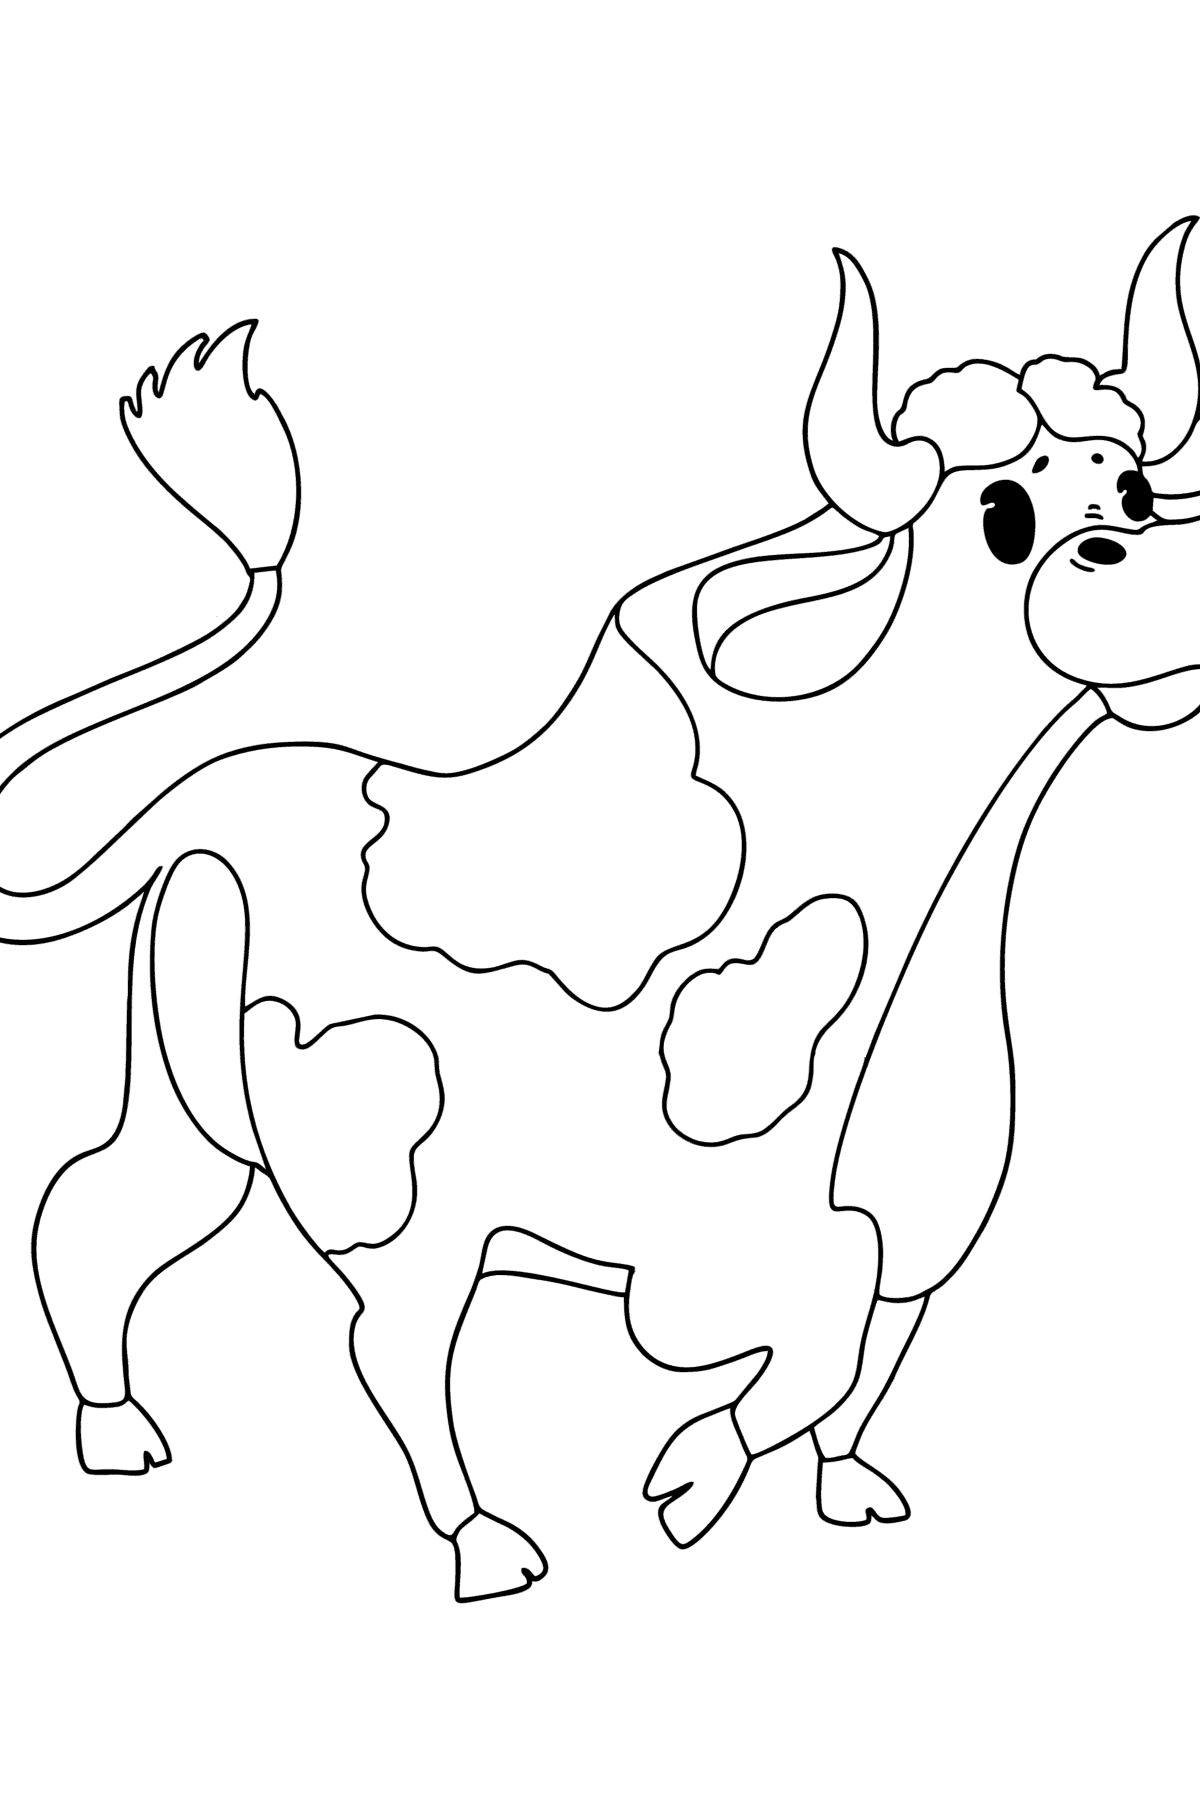 Malbuch Zeichnung eines Stiers - Malvorlagen für Kinder